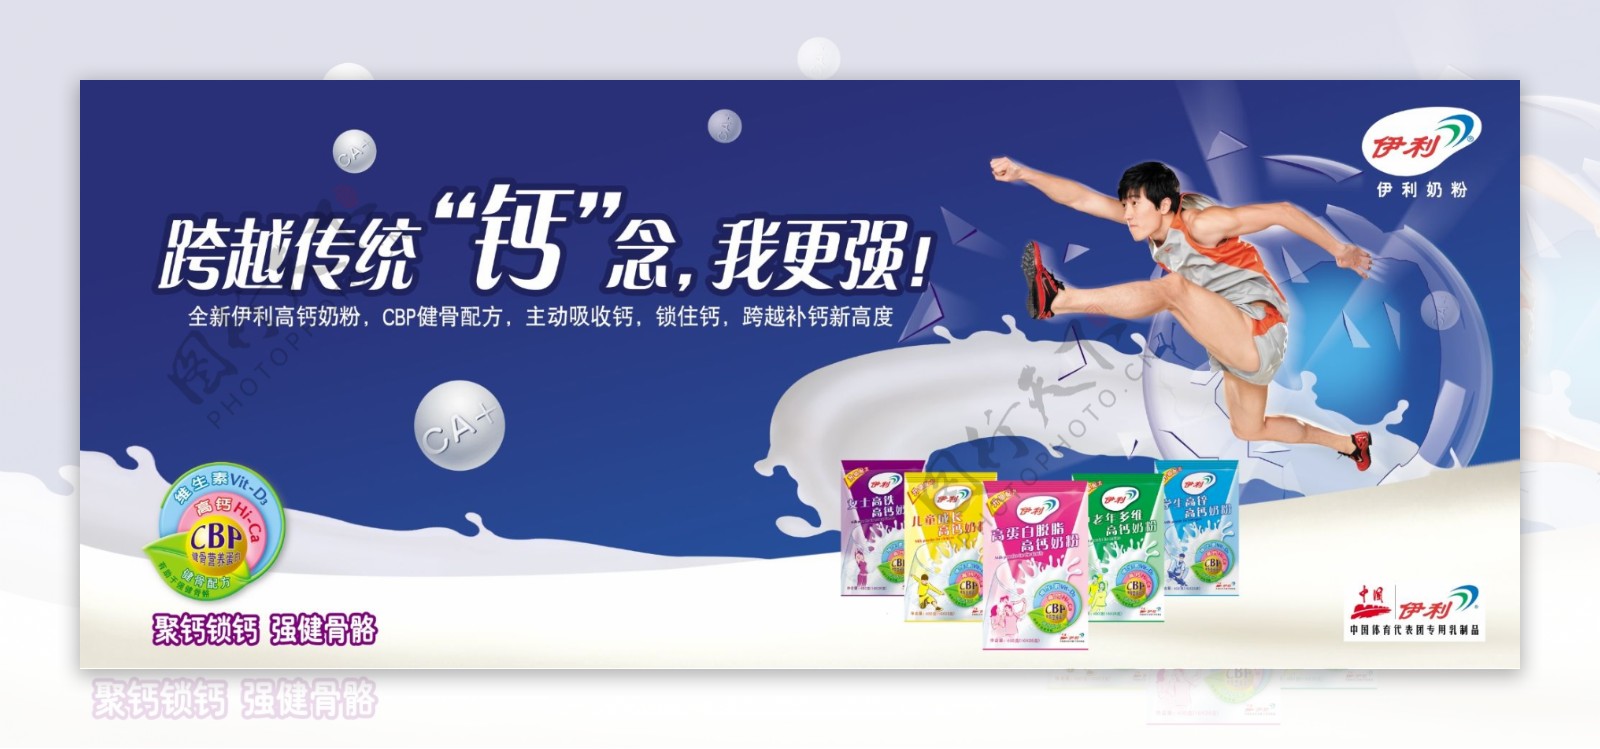 伊利成人牛奶广告刘翔伊利标志跨越图片